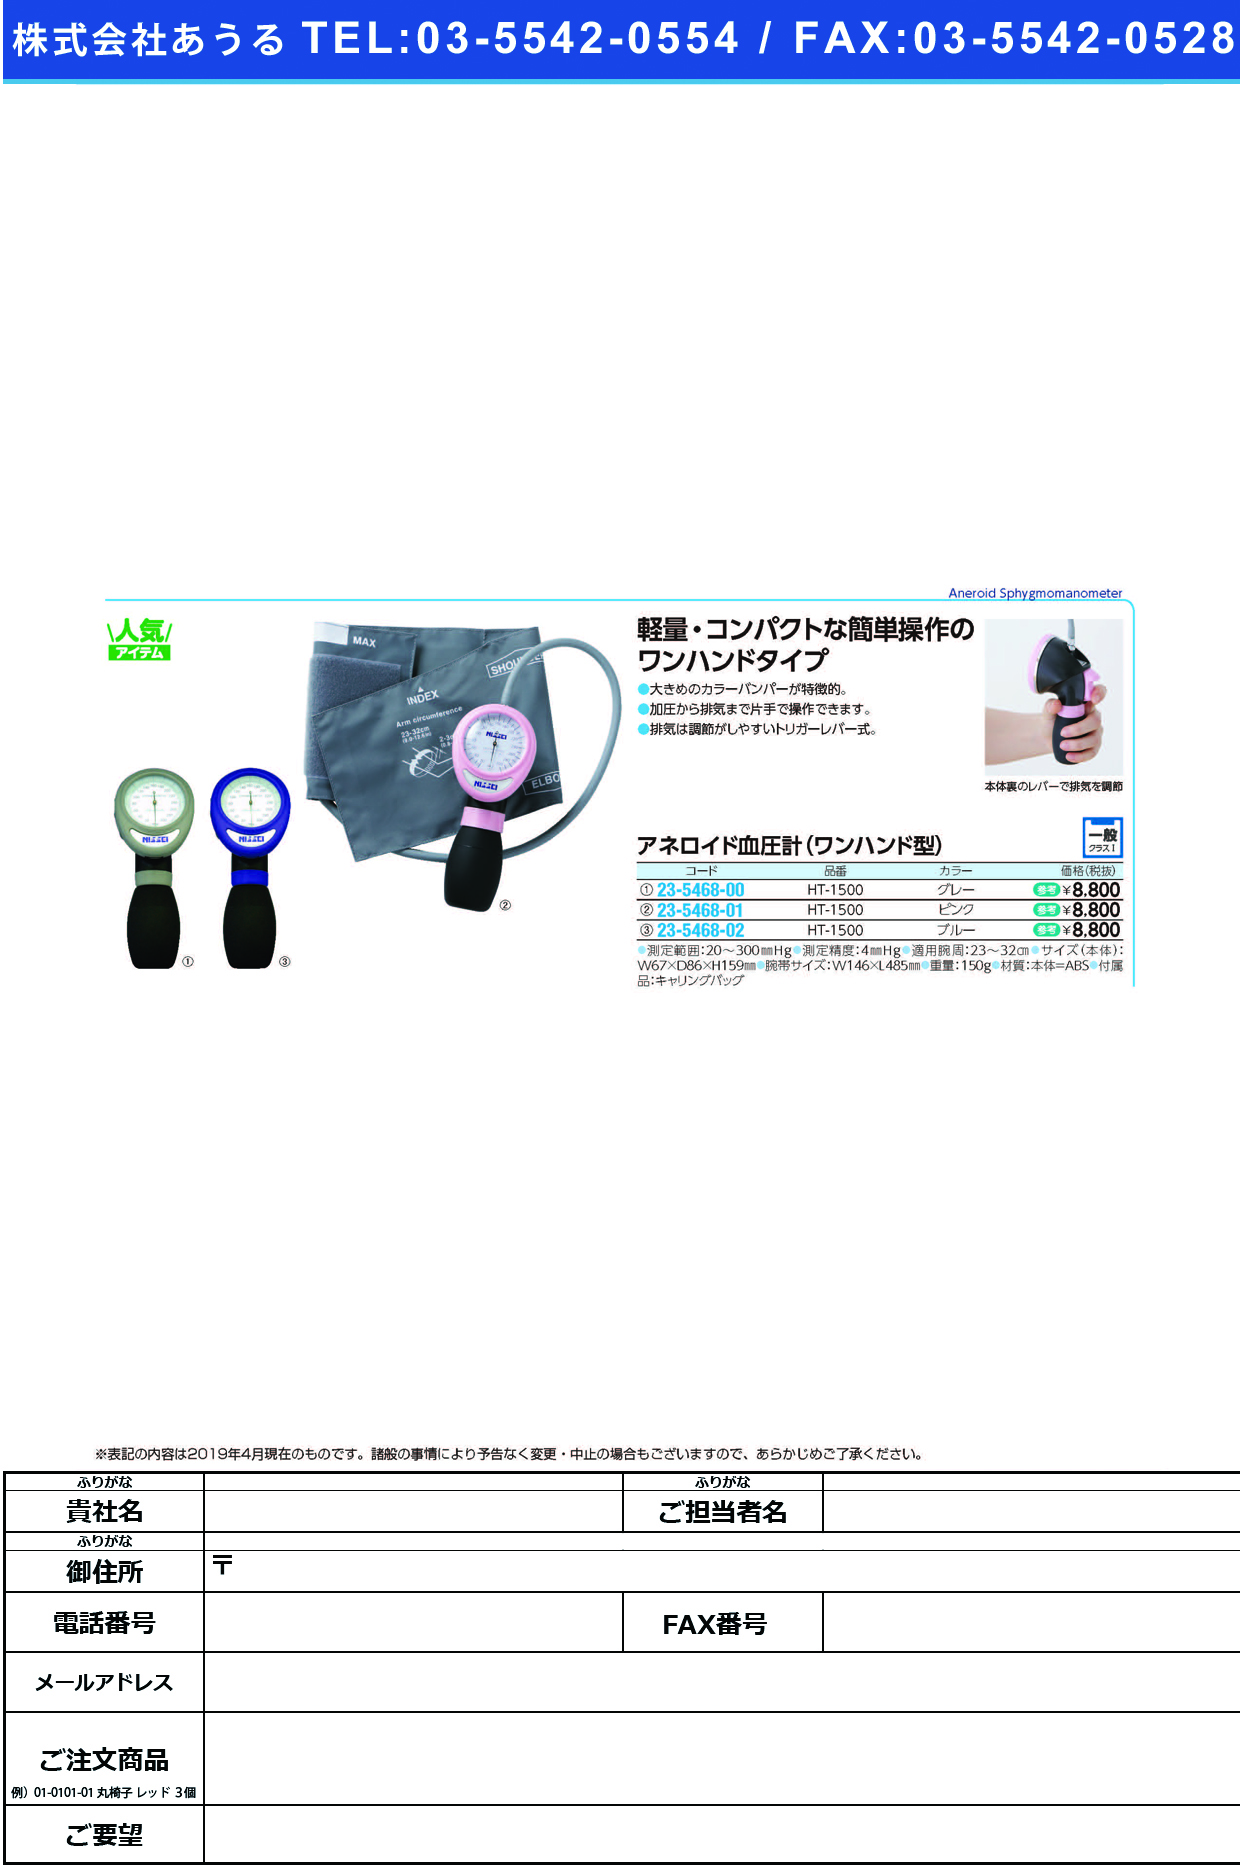 (23-5468-02)ワンハンド式アネロイド血圧計 HT-1500(ﾌﾞﾙｰ) ﾜﾝﾊﾝﾄﾞｼｷｱﾈﾛｲﾄﾞｹﾂｱﾂｹｲ(日本精密測器)【1台単位】【2019年カタログ商品】